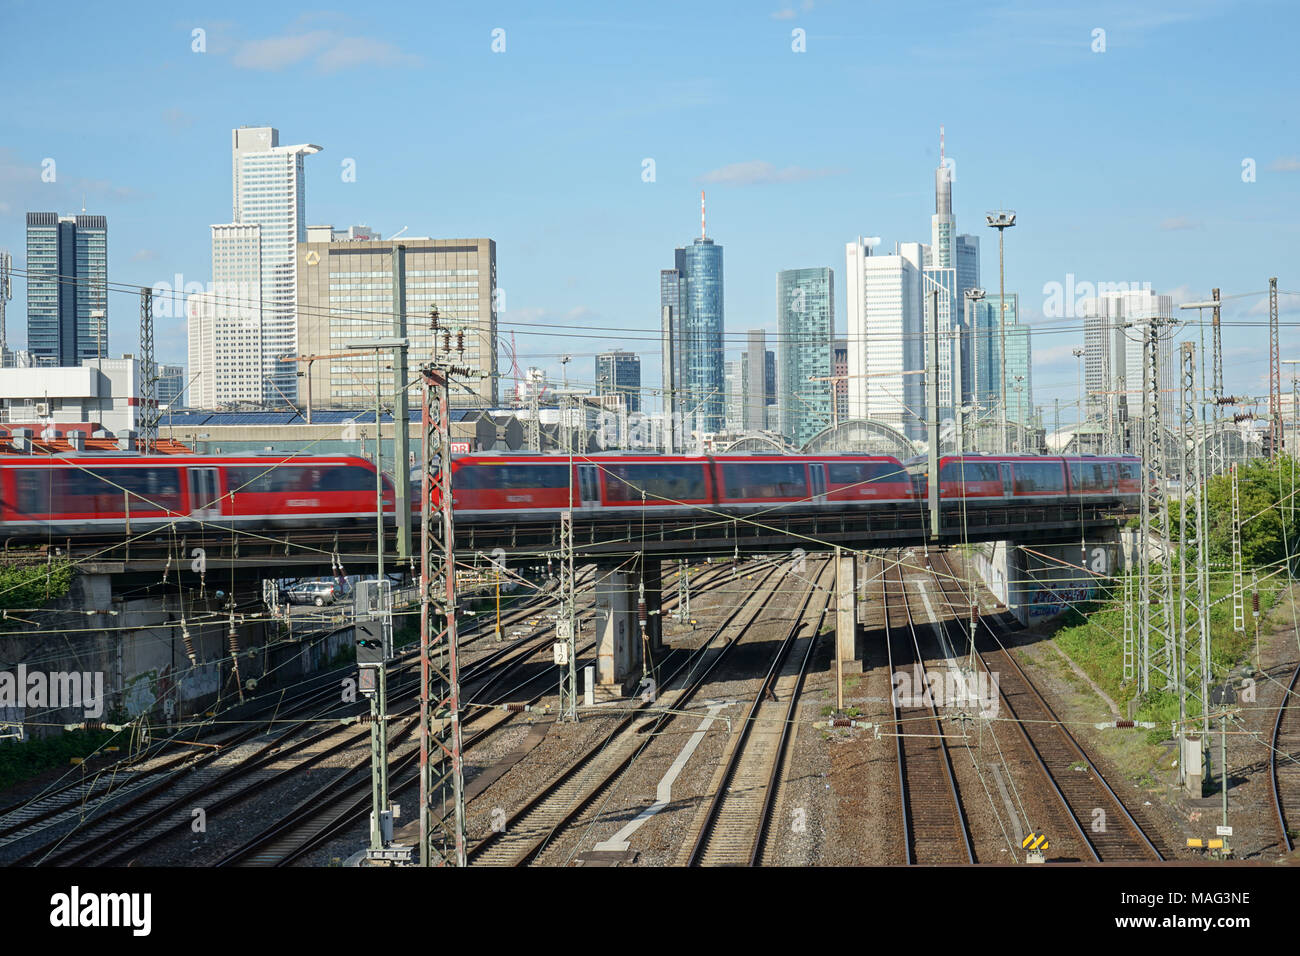 Regionalzug fährt über eine Brücke, Gleise zum Frankfurter Hauptbahnhof, Skyline, Francoforte, Deutschland, Europa Foto Stock